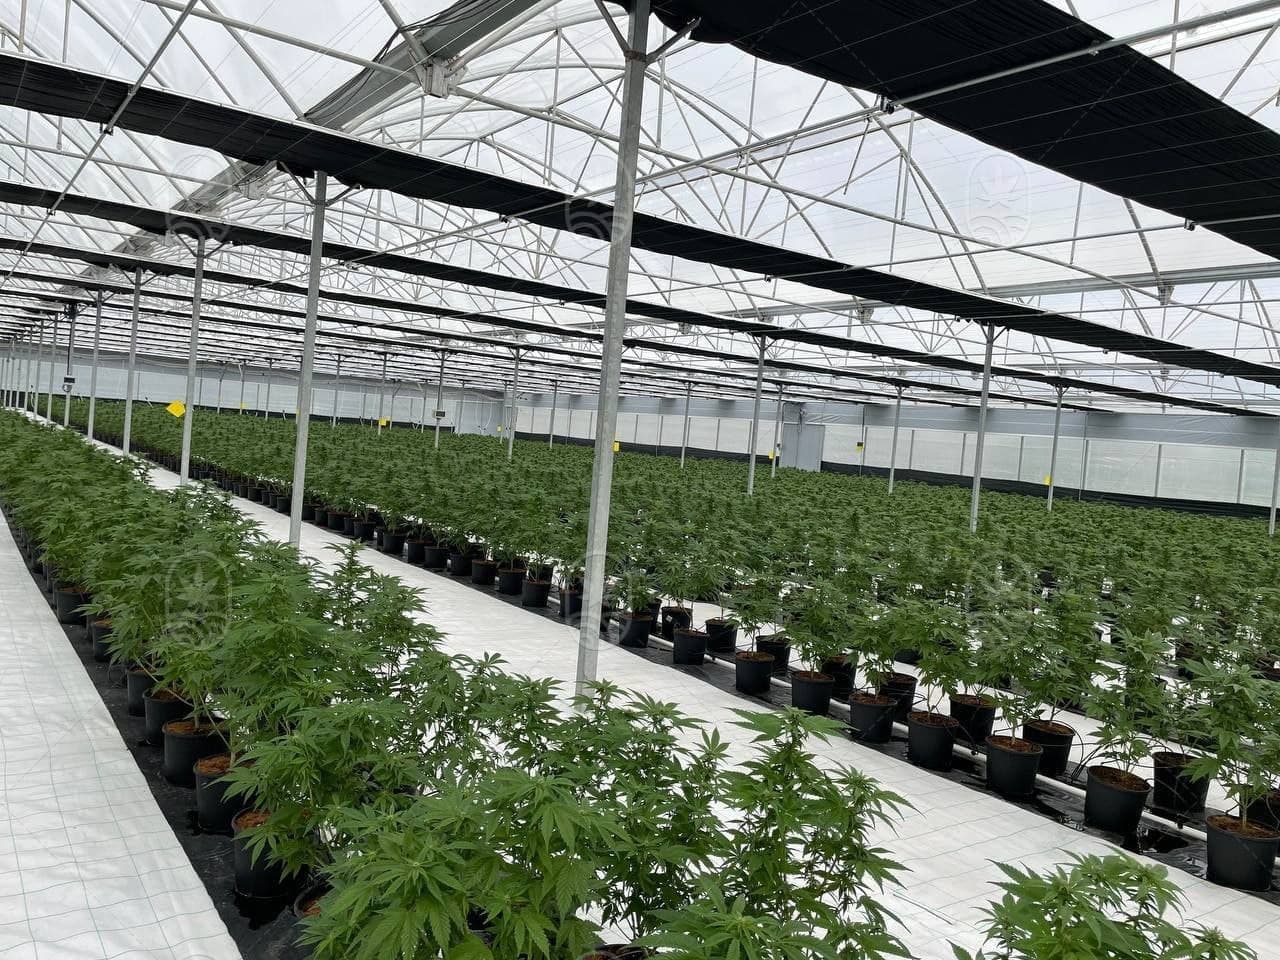 JuicyFields - Din cannabisplanta kan också växa här